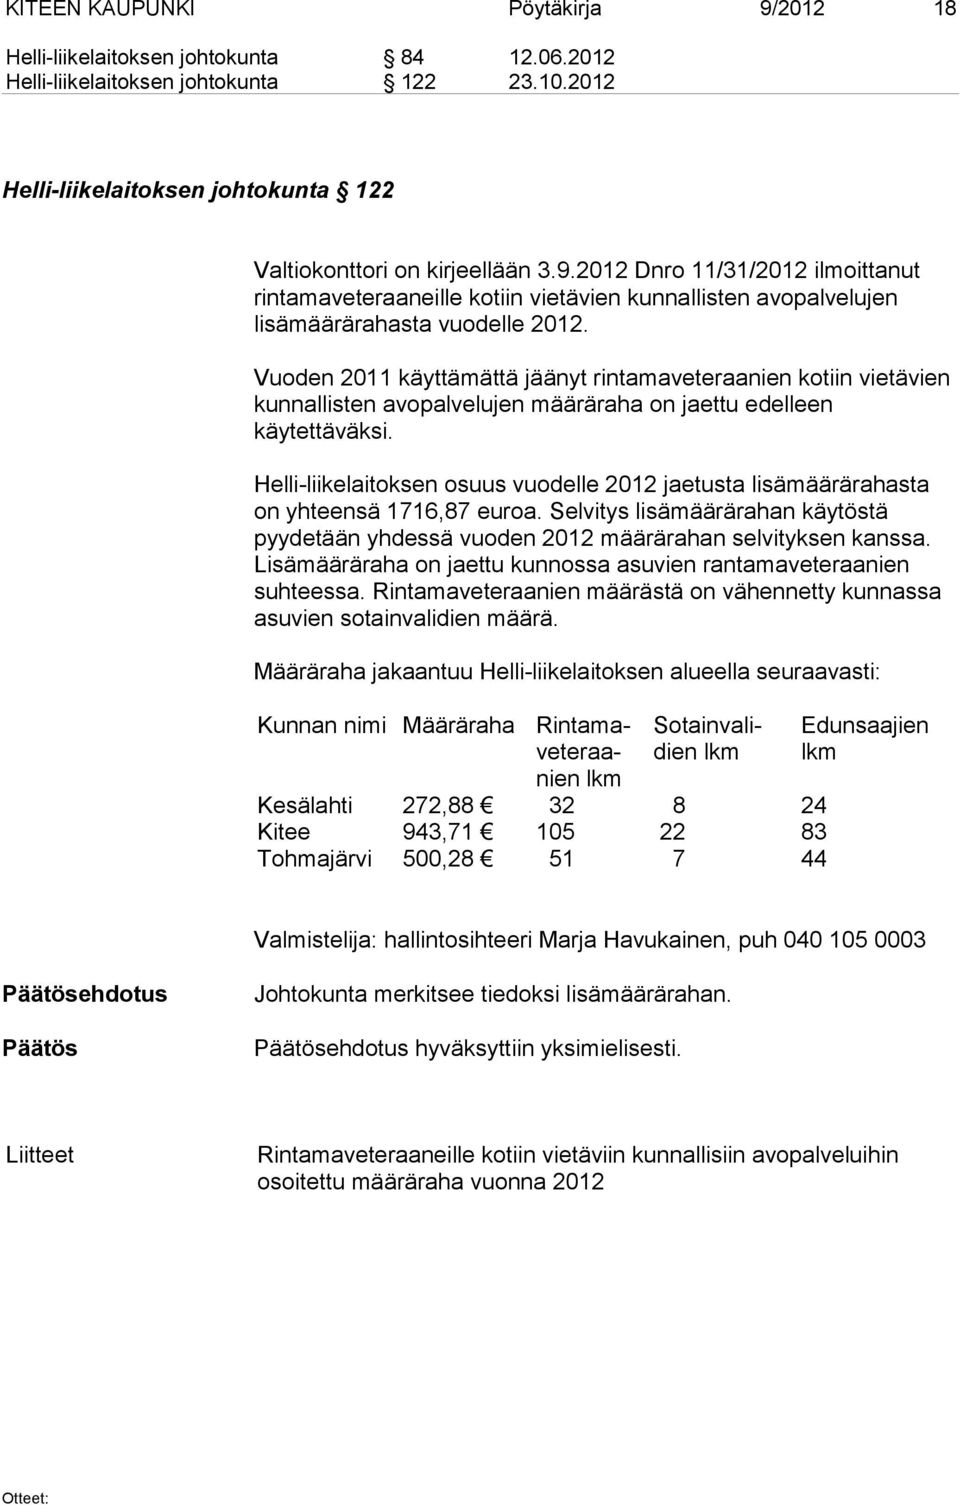 Helli-liikelaitoksen osuus vuodelle 2012 jaetusta lisämäärärahasta on yhteensä 1716,87 euroa. Selvitys lisämäärärahan käytöstä pyydetään yhdessä vuoden 2012 määrärahan selvityksen kanssa.